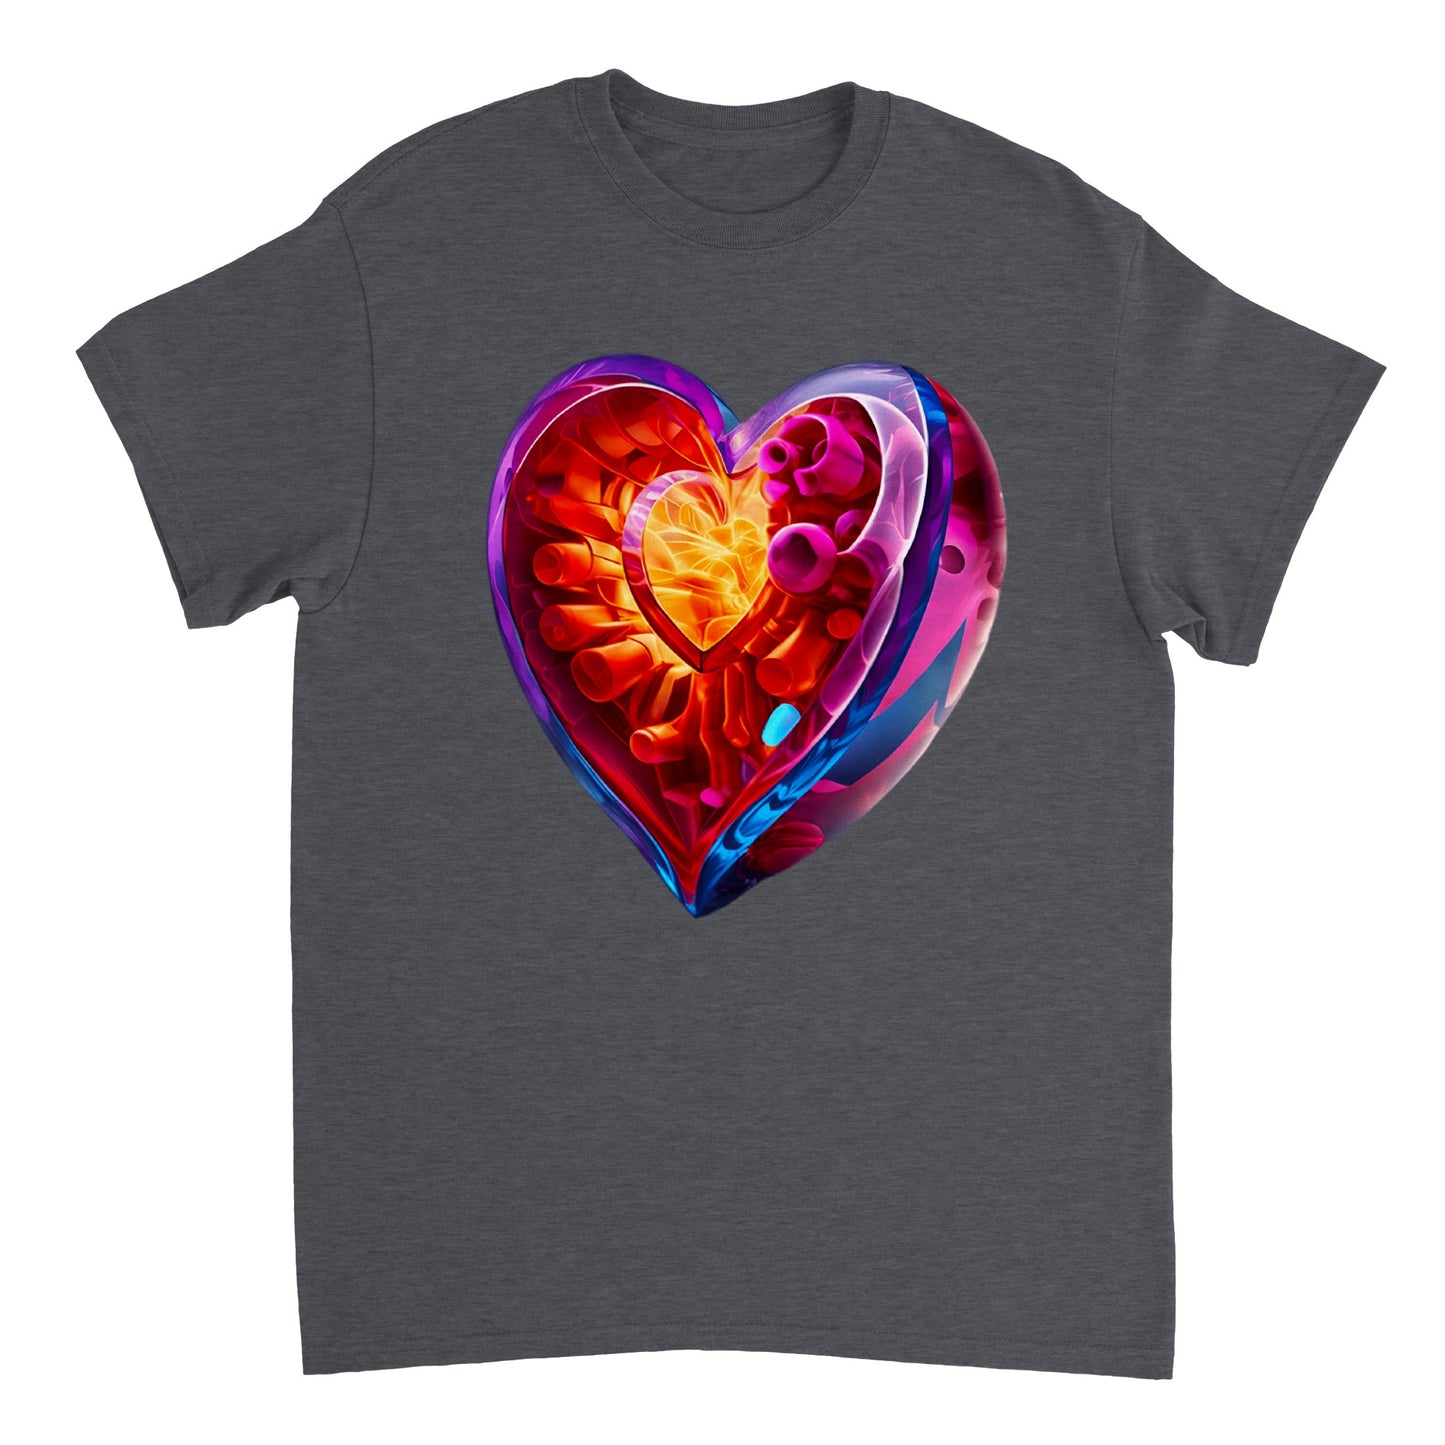 Love Heart - Heavyweight Unisex Crewneck T-shirt 113